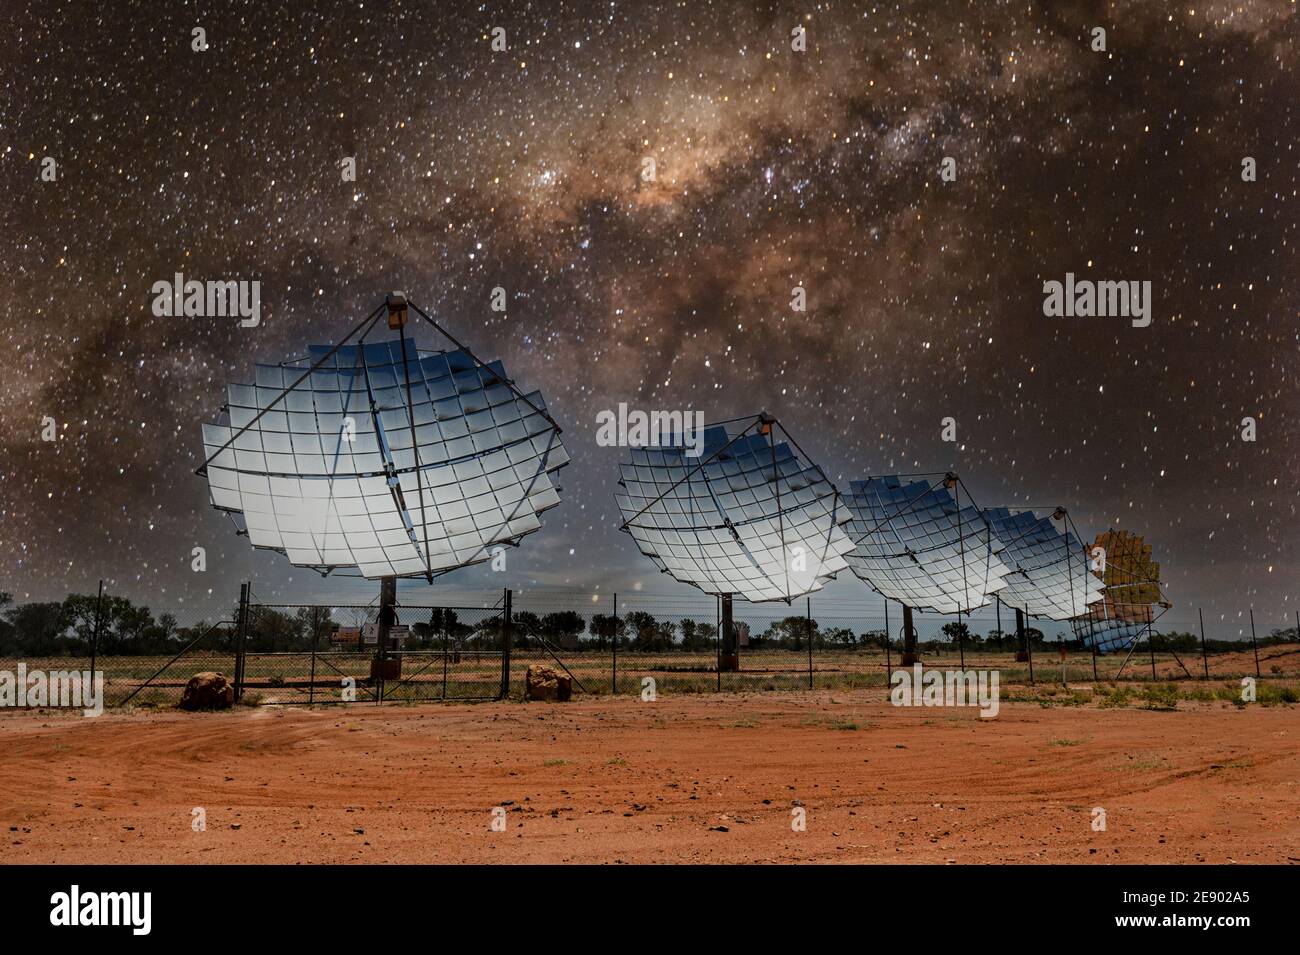 Weltraumerkundungskonzept mit Sonnenschalen, die auf die Milchstraße zeigen Weg Stockfoto